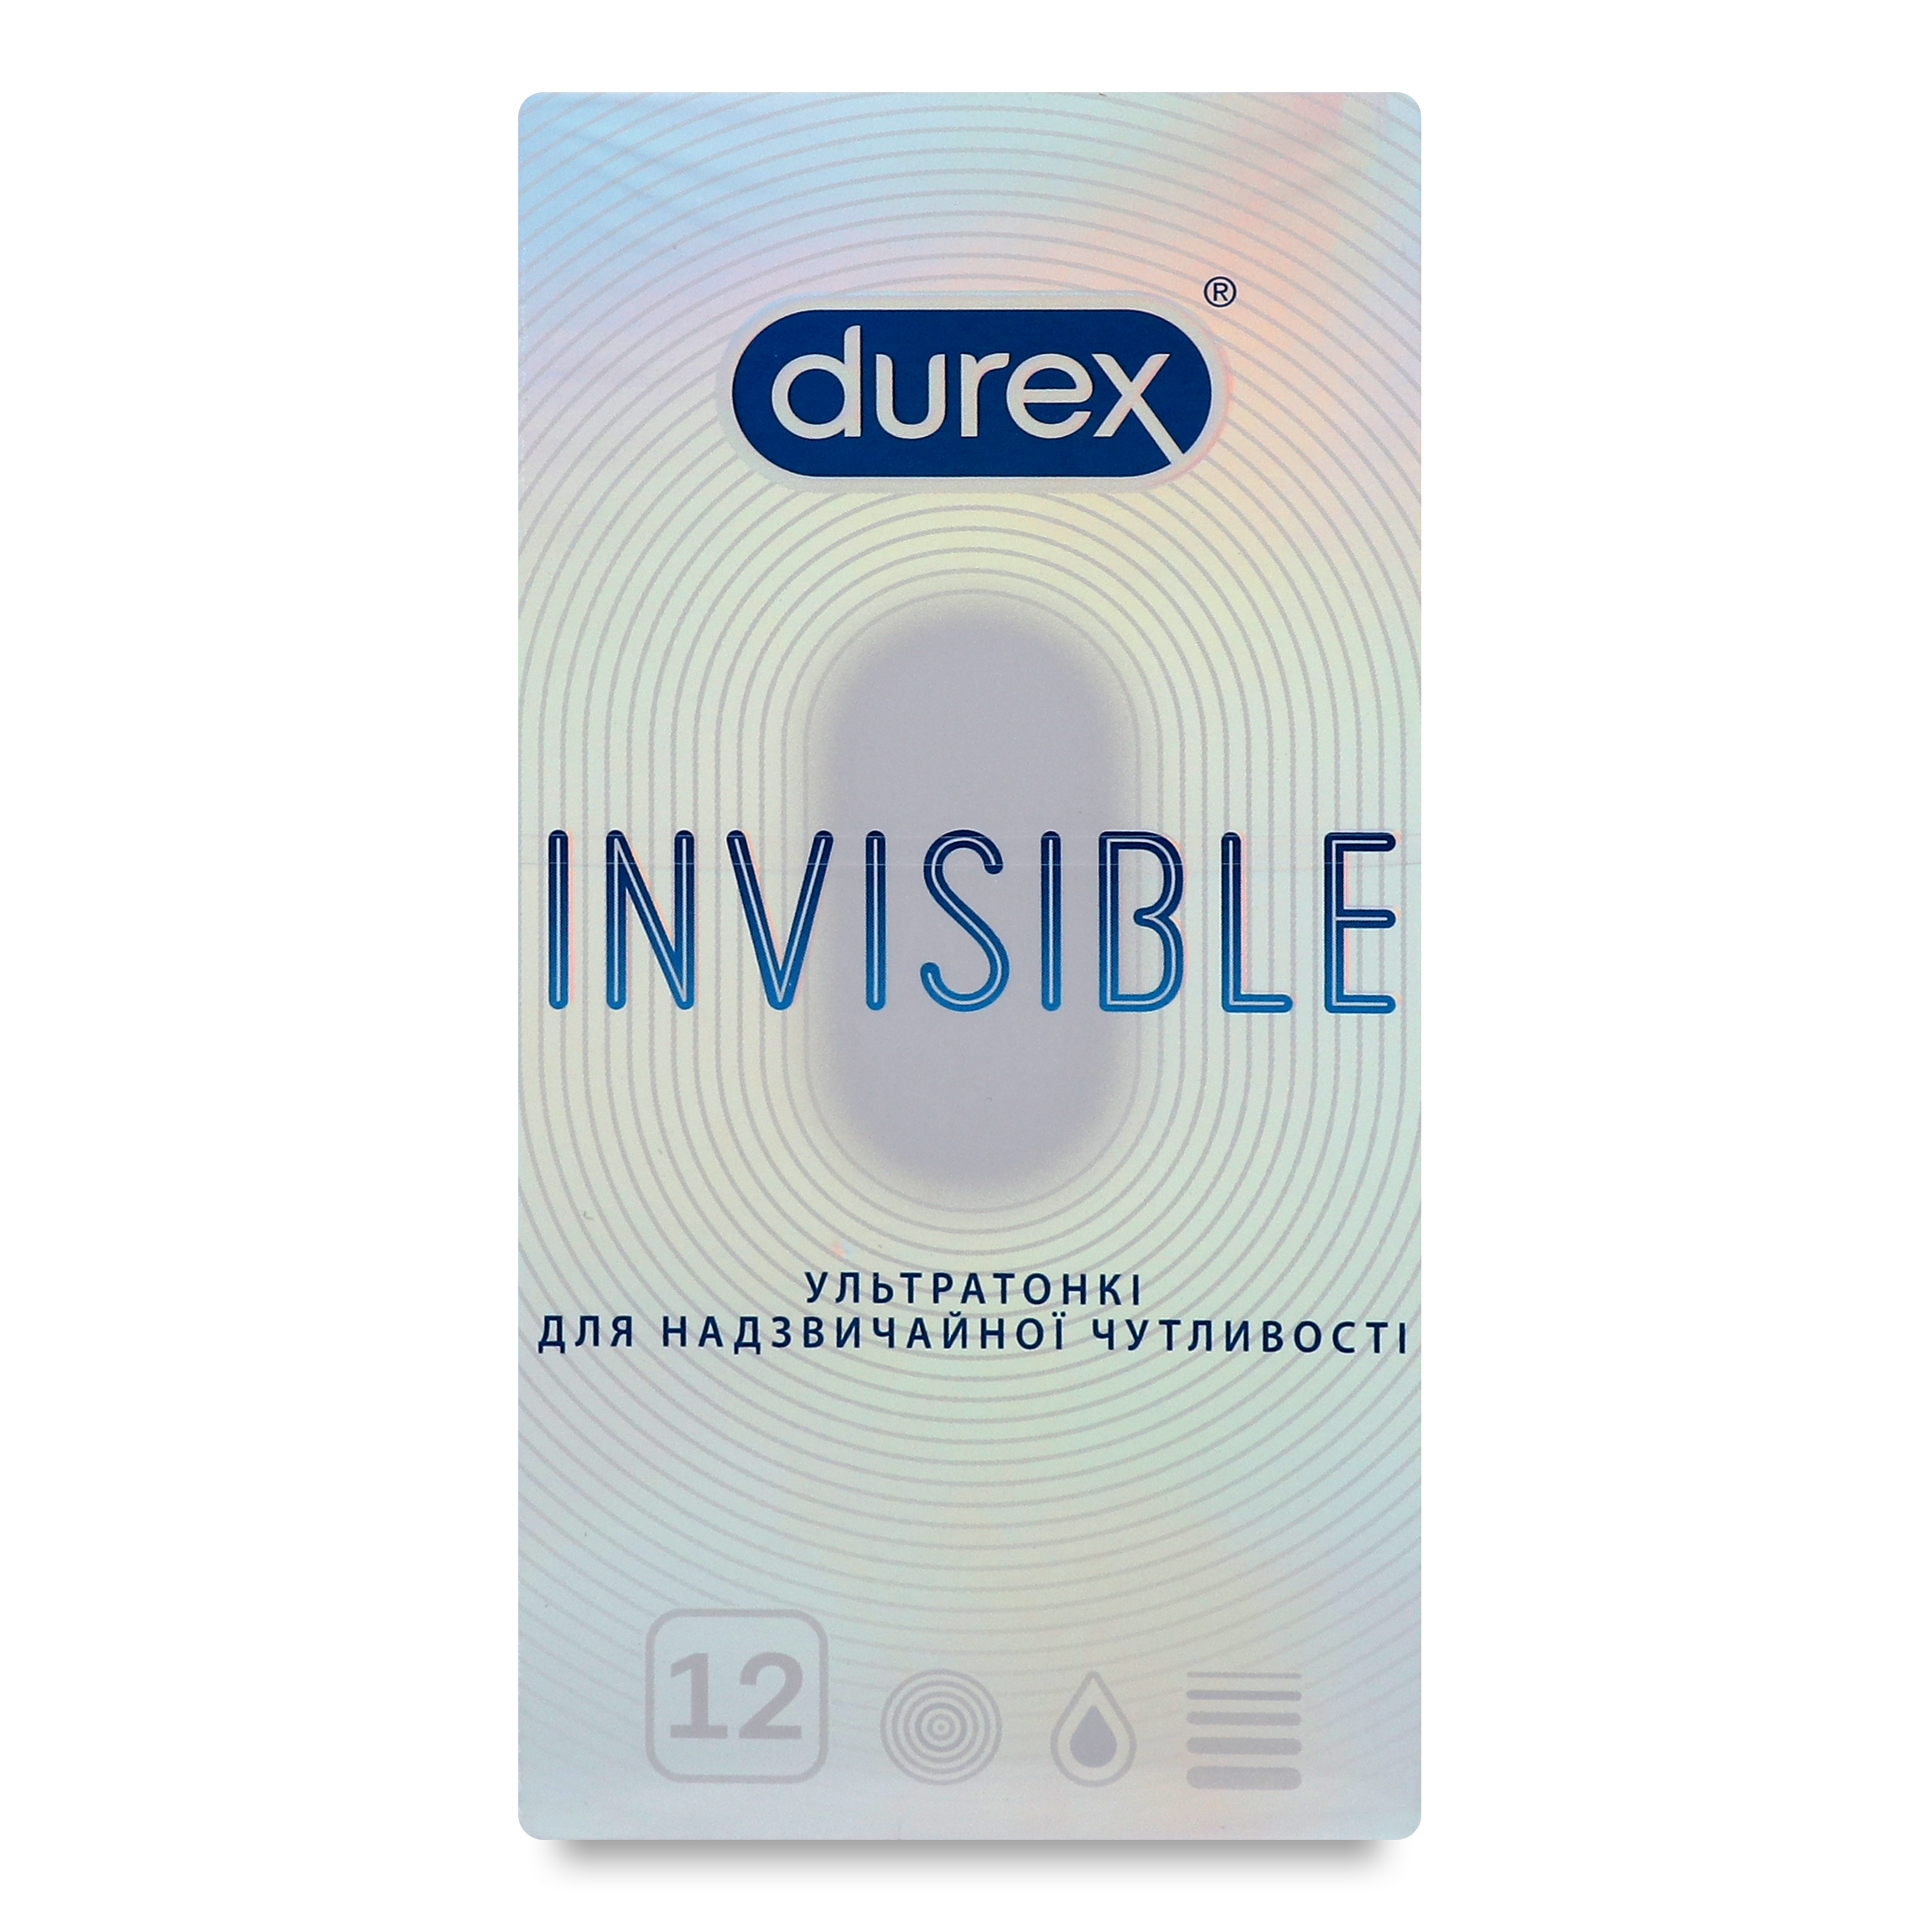 Презервативи Durex Invisible ультратонкі 12шт